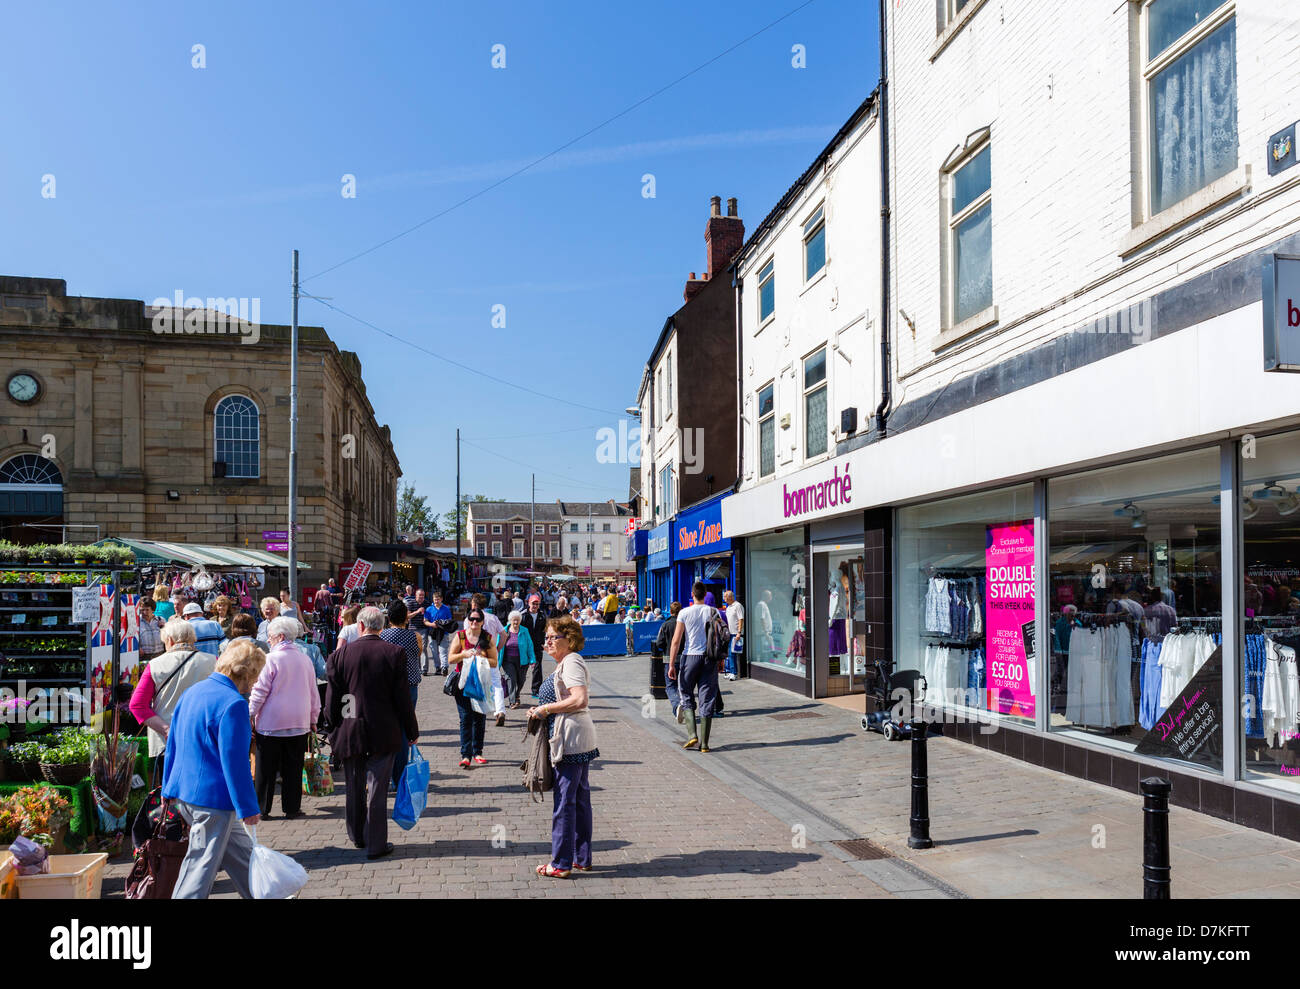 Geschäfte und Markt Stände auf dem Marktplatz, Doncaster, South Yorkshire, England, UK Stockfoto